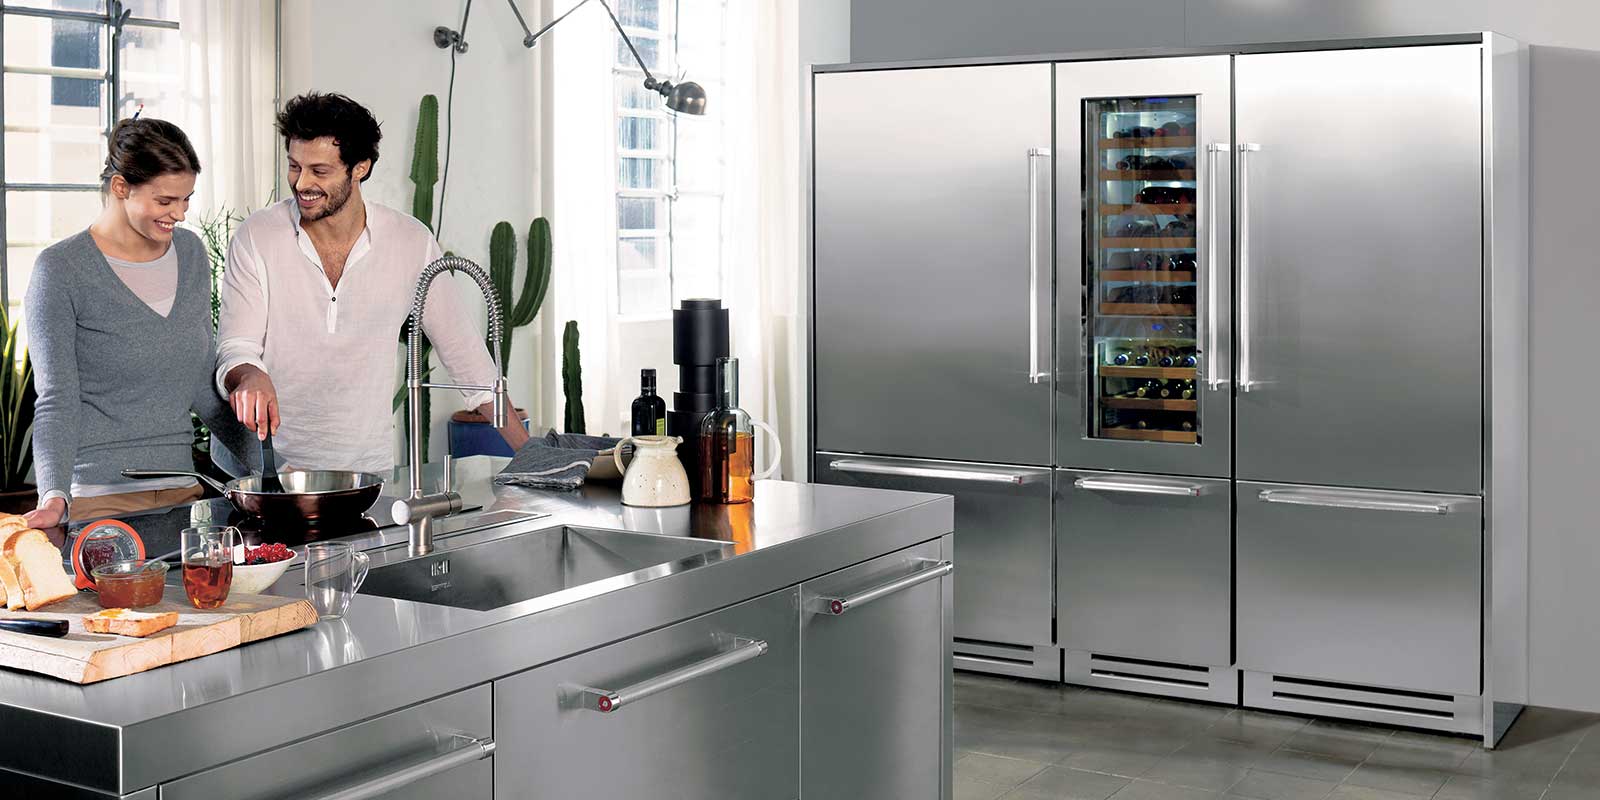 Возврат холодильника качественого и бракованного в магазин - инструкция в 2021 году